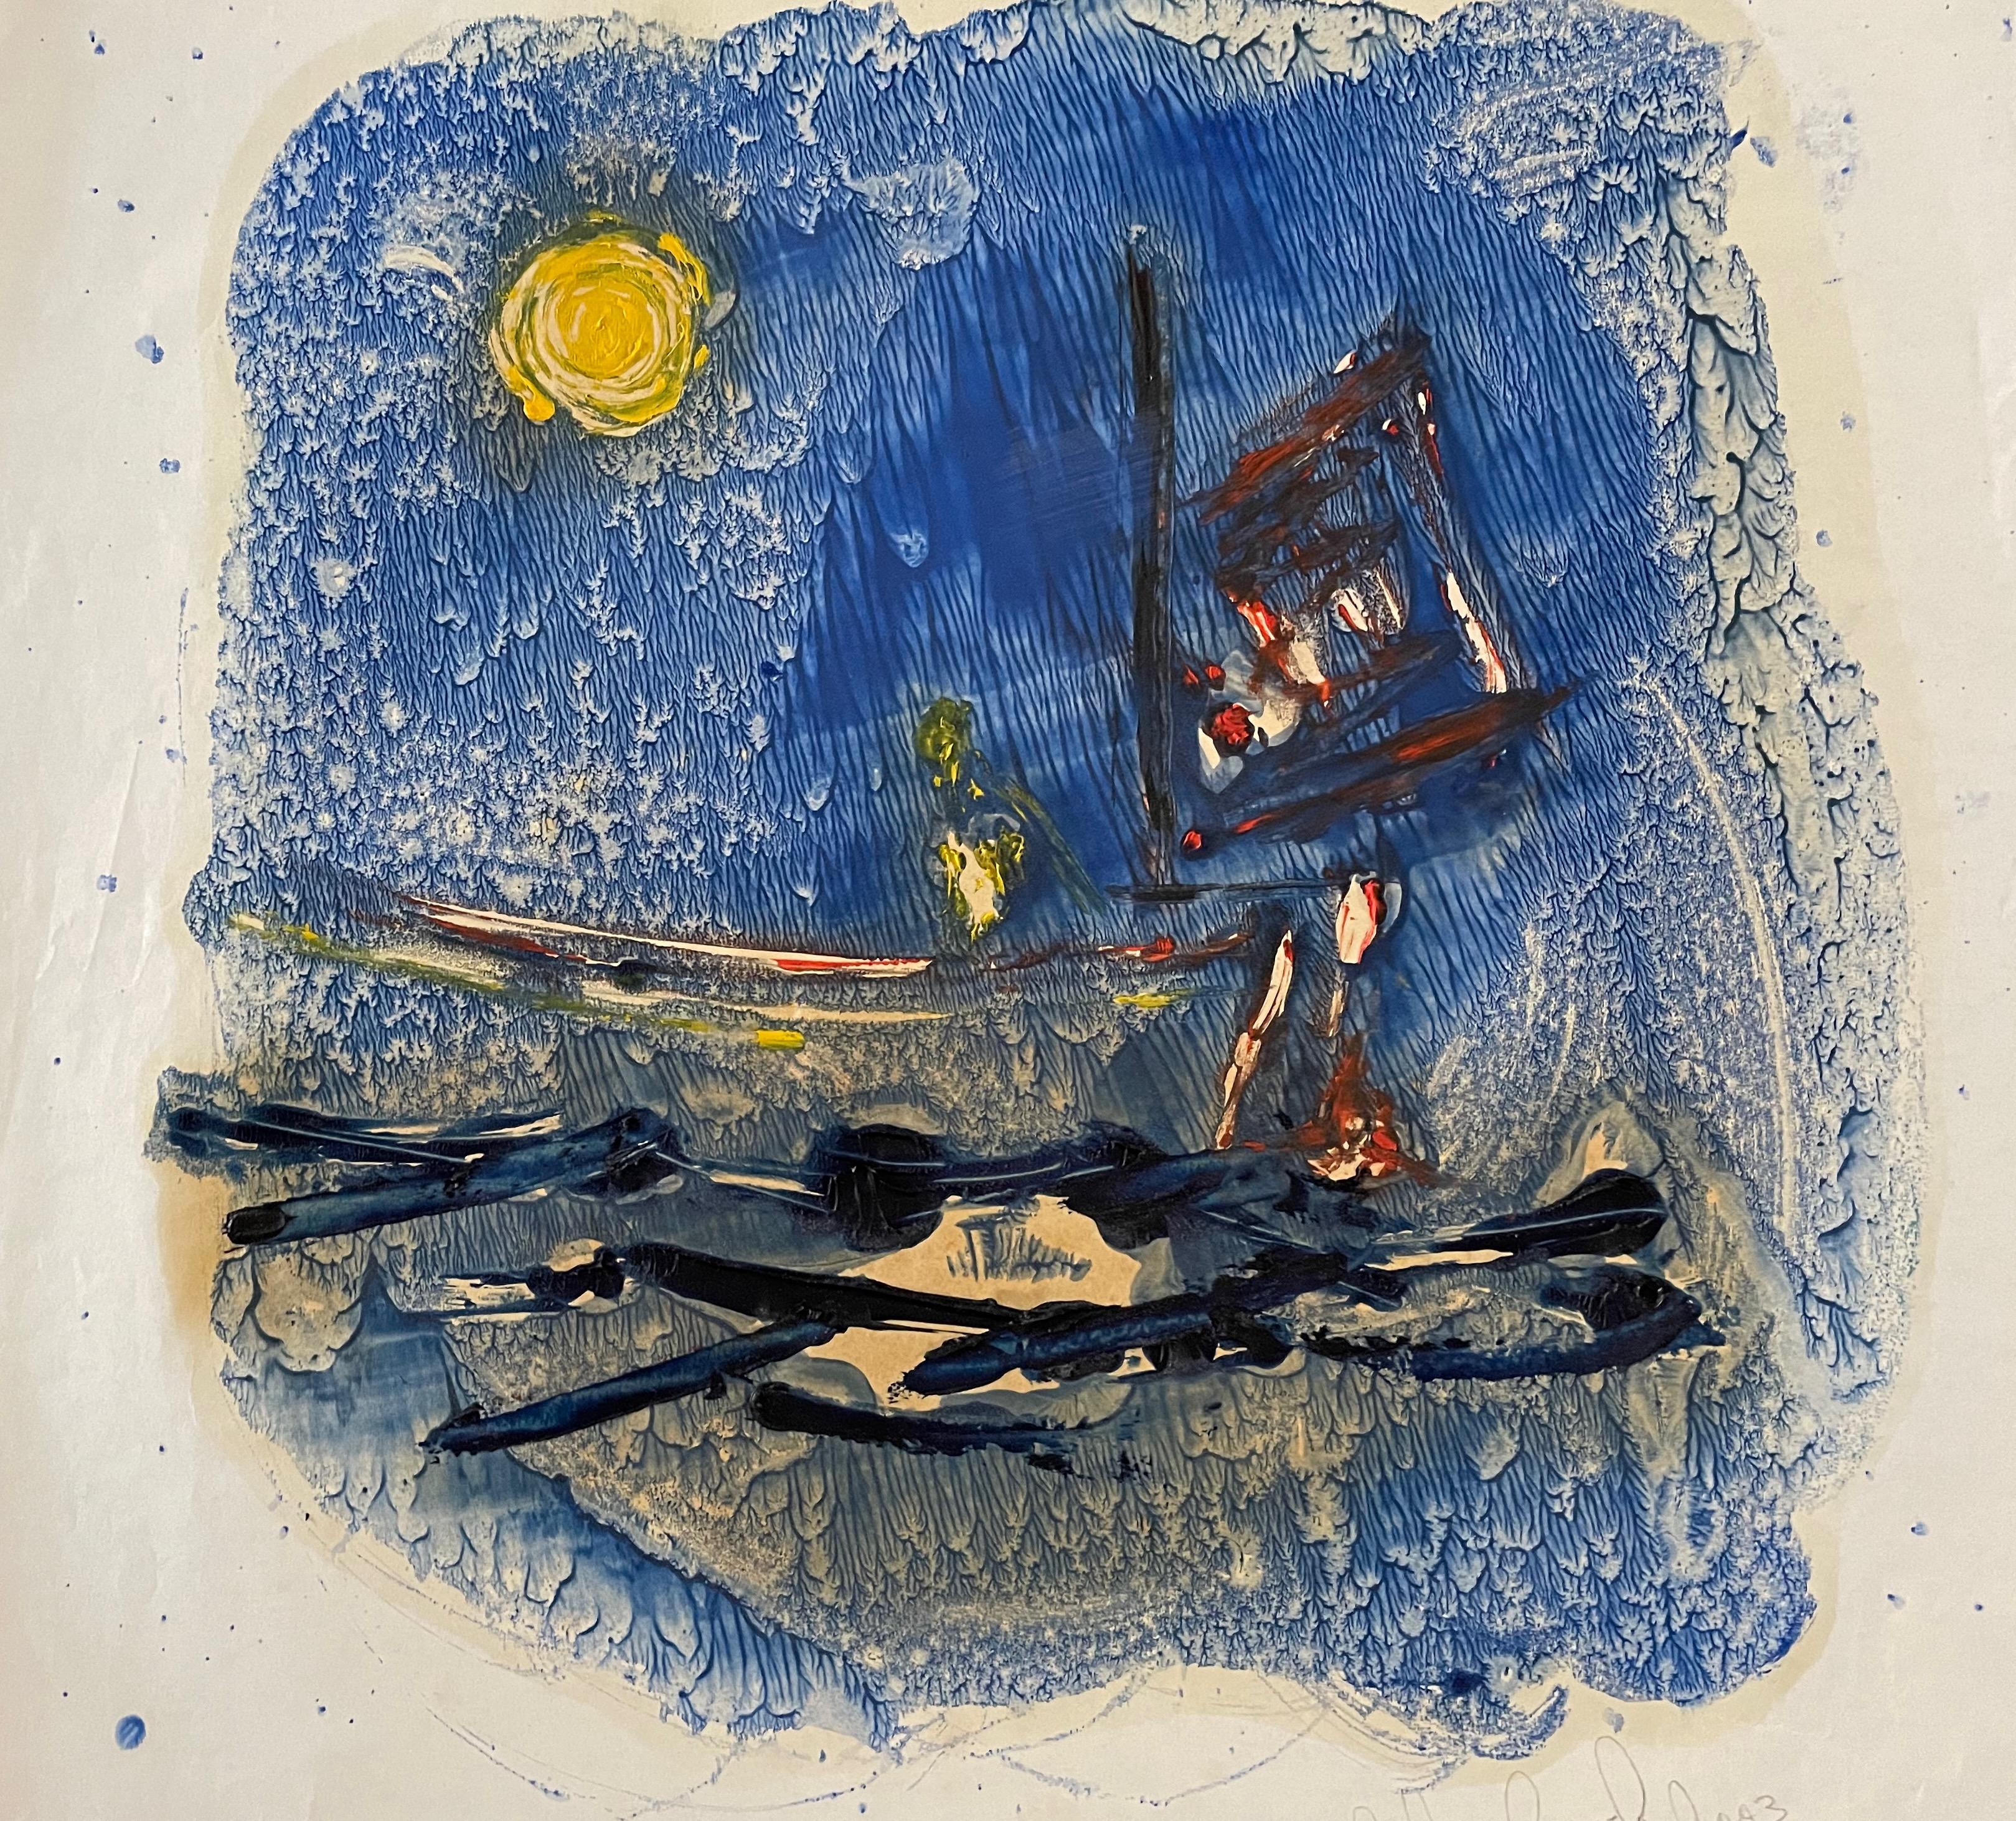 Abstrakte Meereslandschaft 5.  Zeitgenössische expressionistische Seelandschaftsmalerei